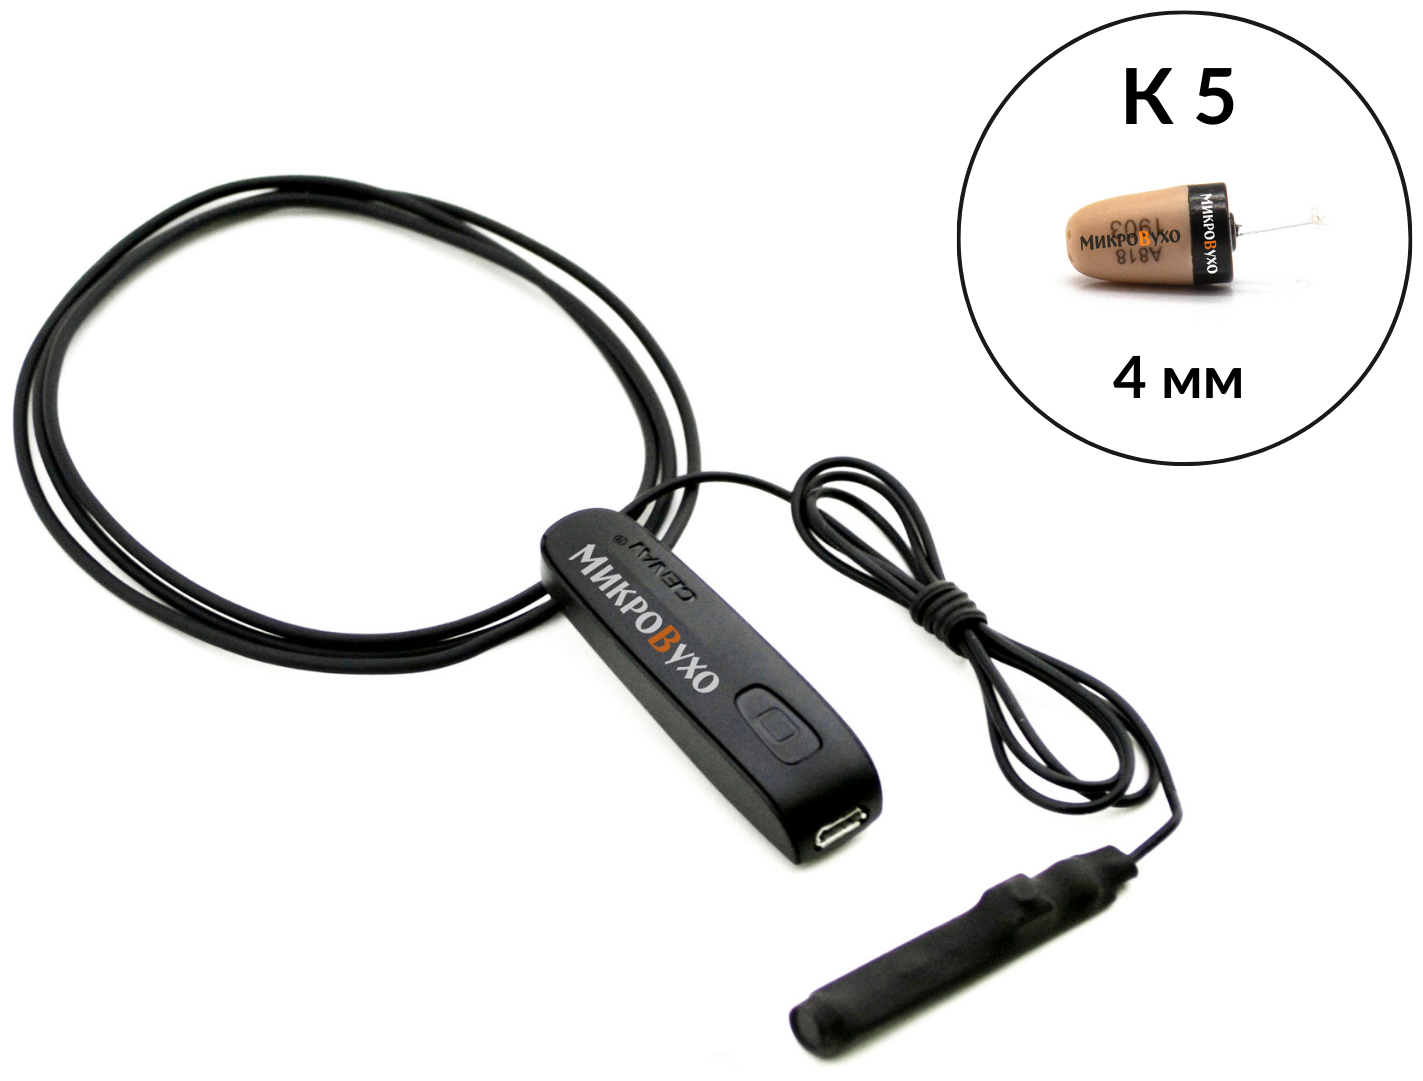 Капсульный микронаушники К5 4 мм и беспроводная гарнитура Bluetooth Basic с выносным микрофоном, кнопкой подачи сигнала, кнопкой ответа и перезвона, 3 часа в режиме активного разговора